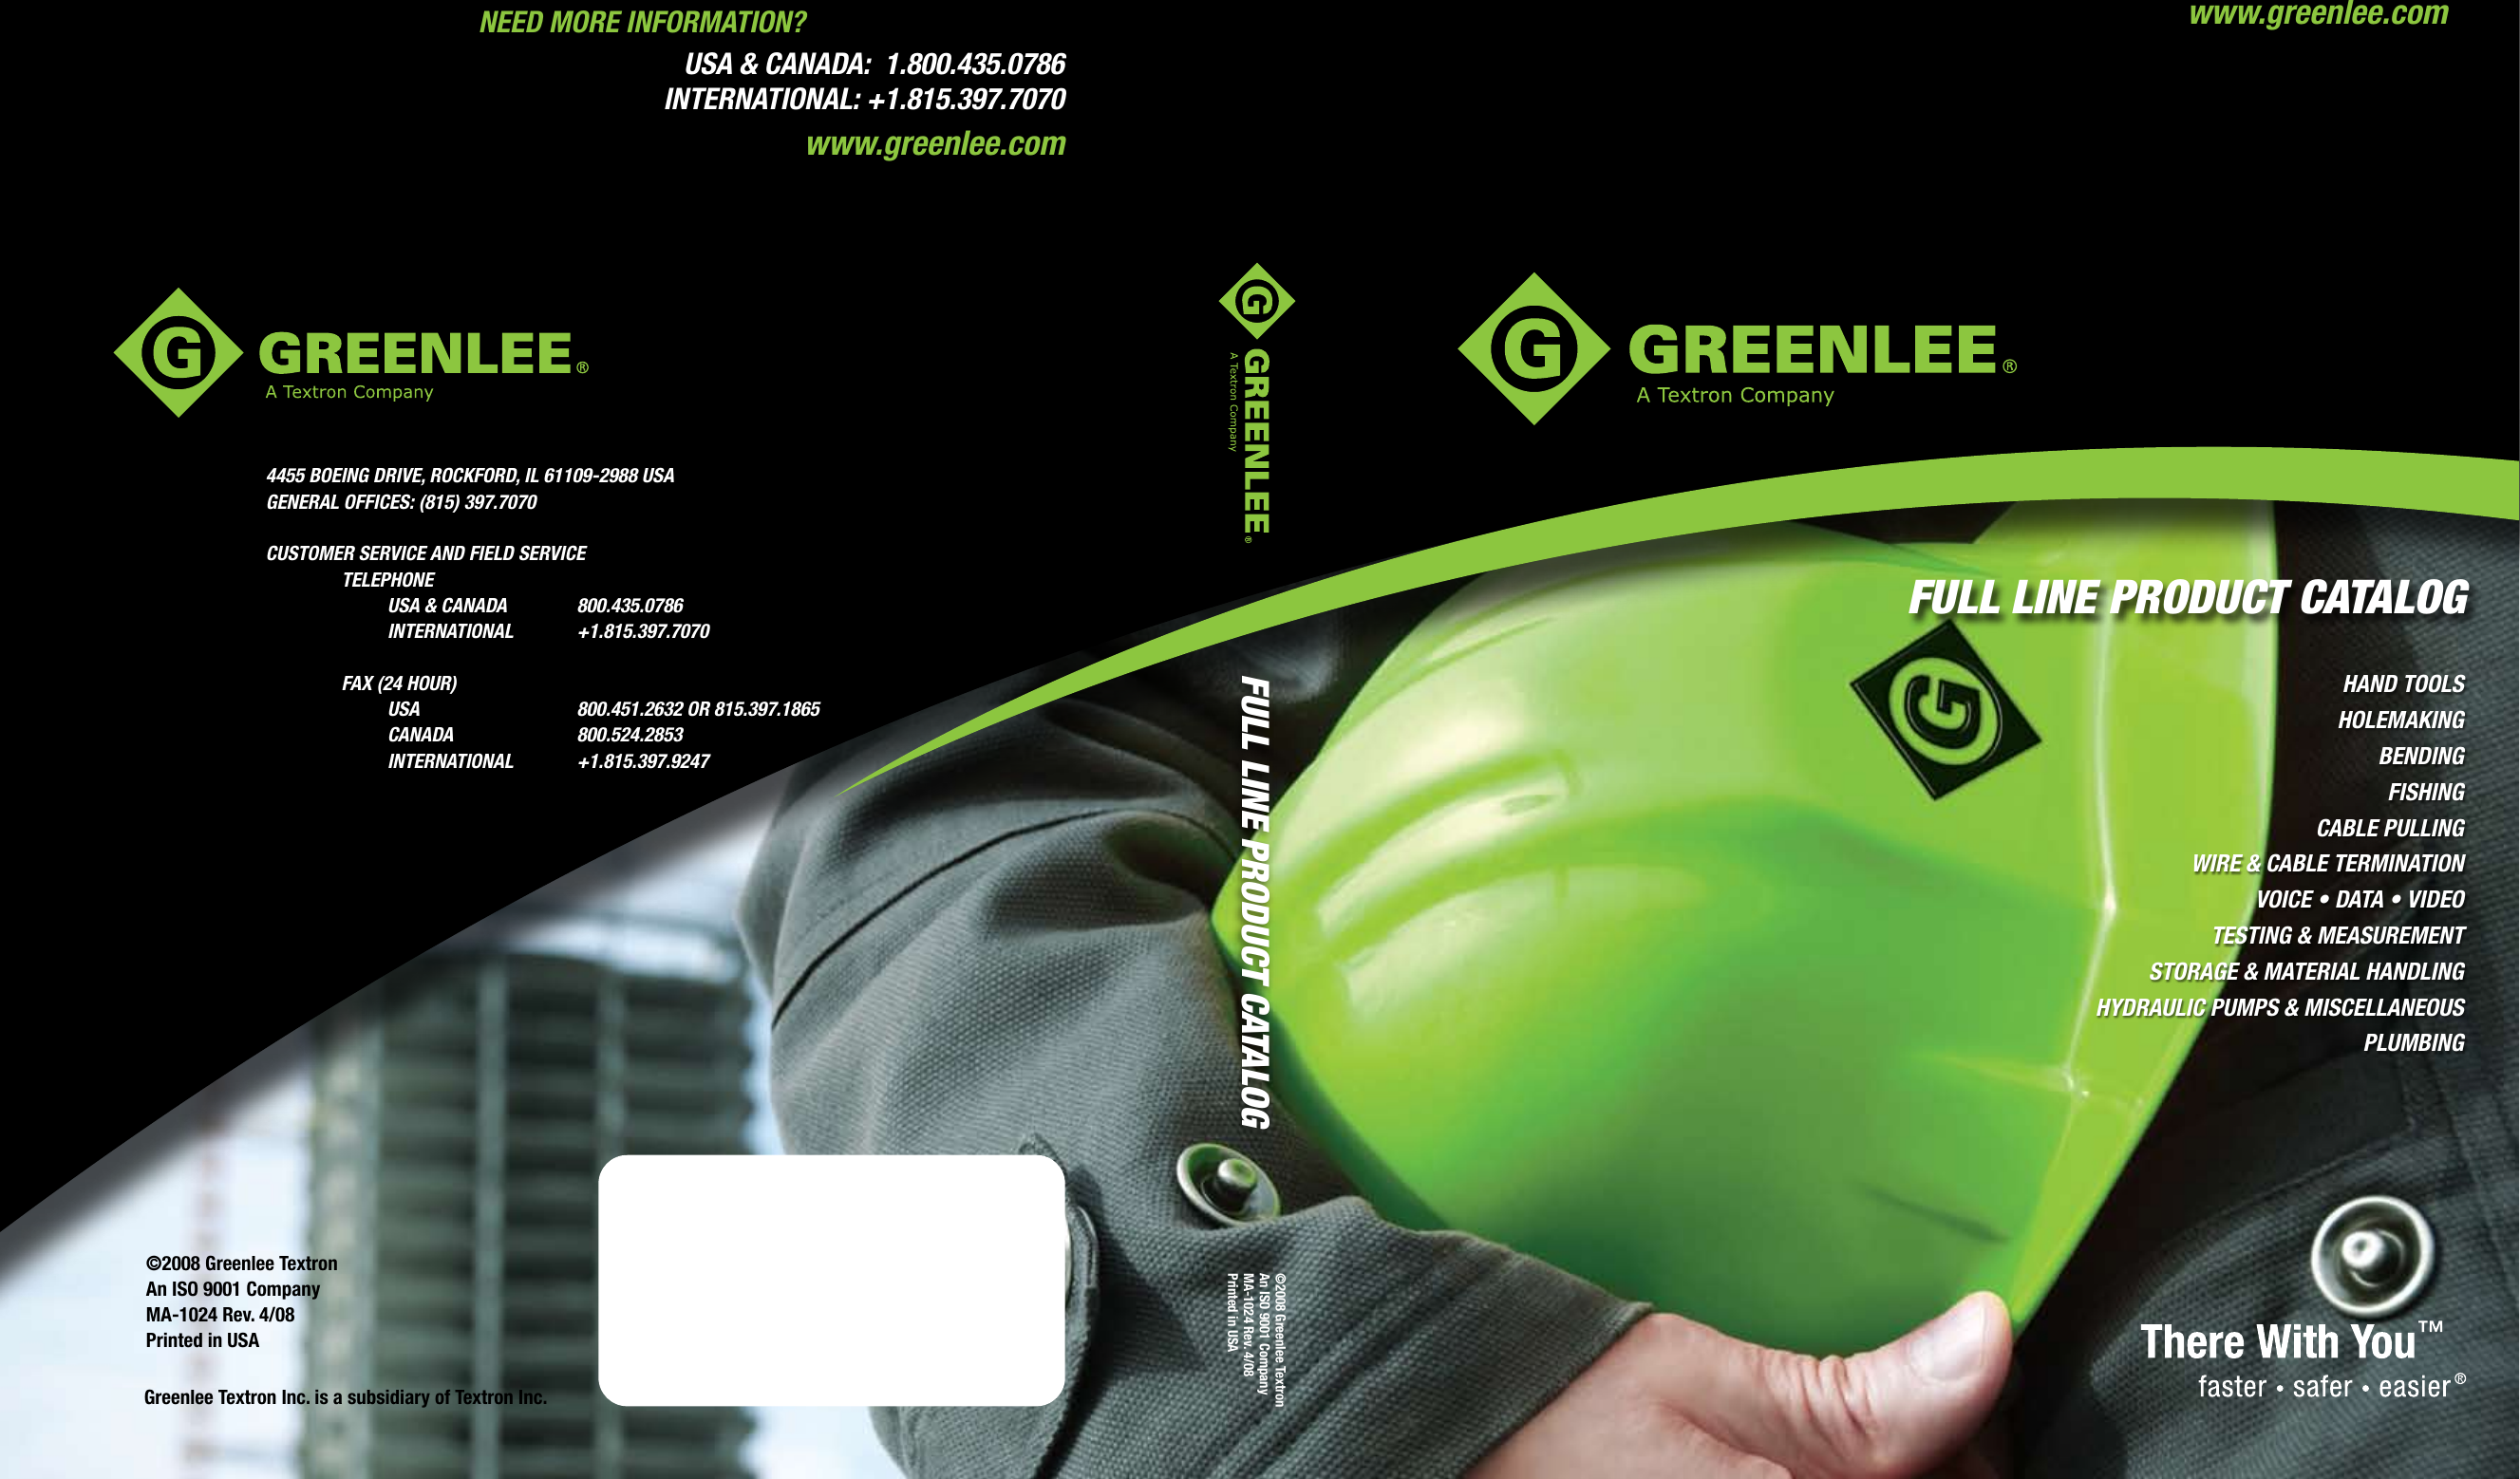 Greenlee ES2511 Gator 14.4v Cordless ACSR Cable Cutter Kit for sale online 